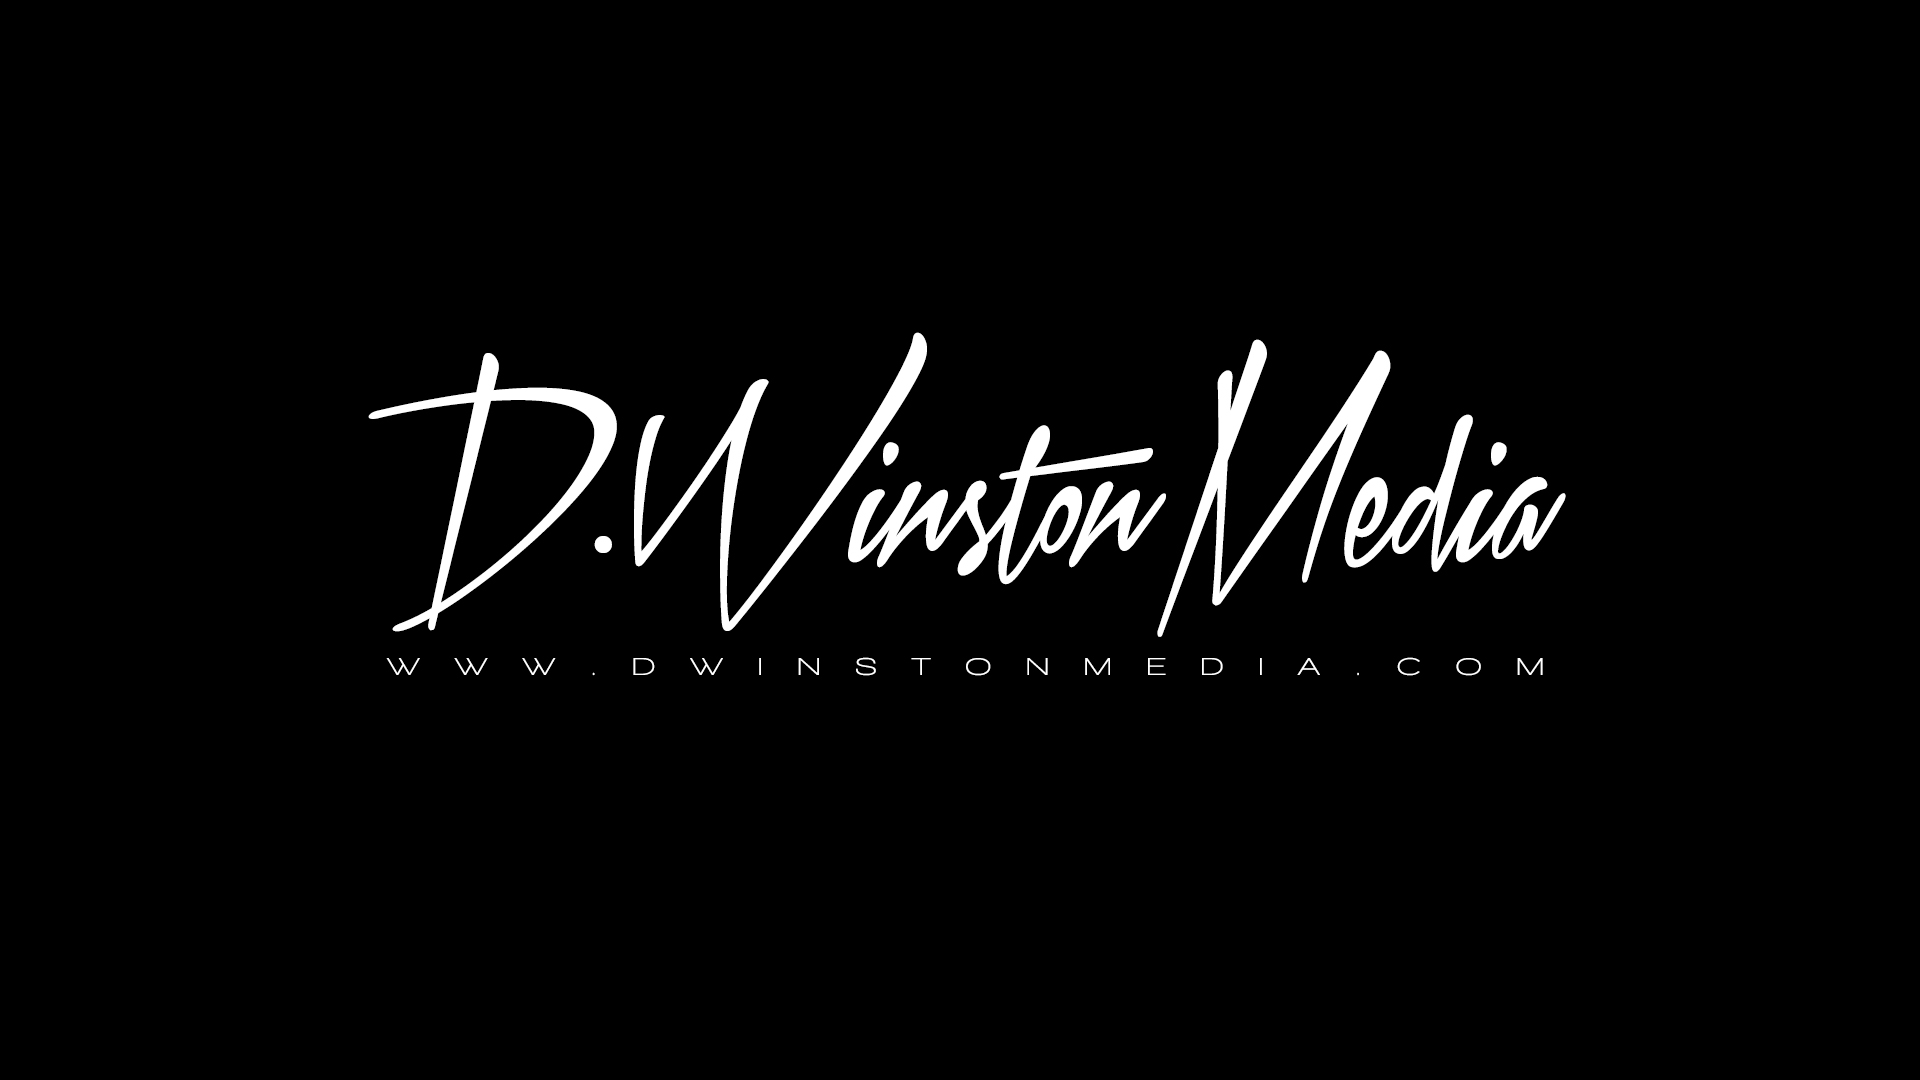 d winston media logo black bkg.jpg